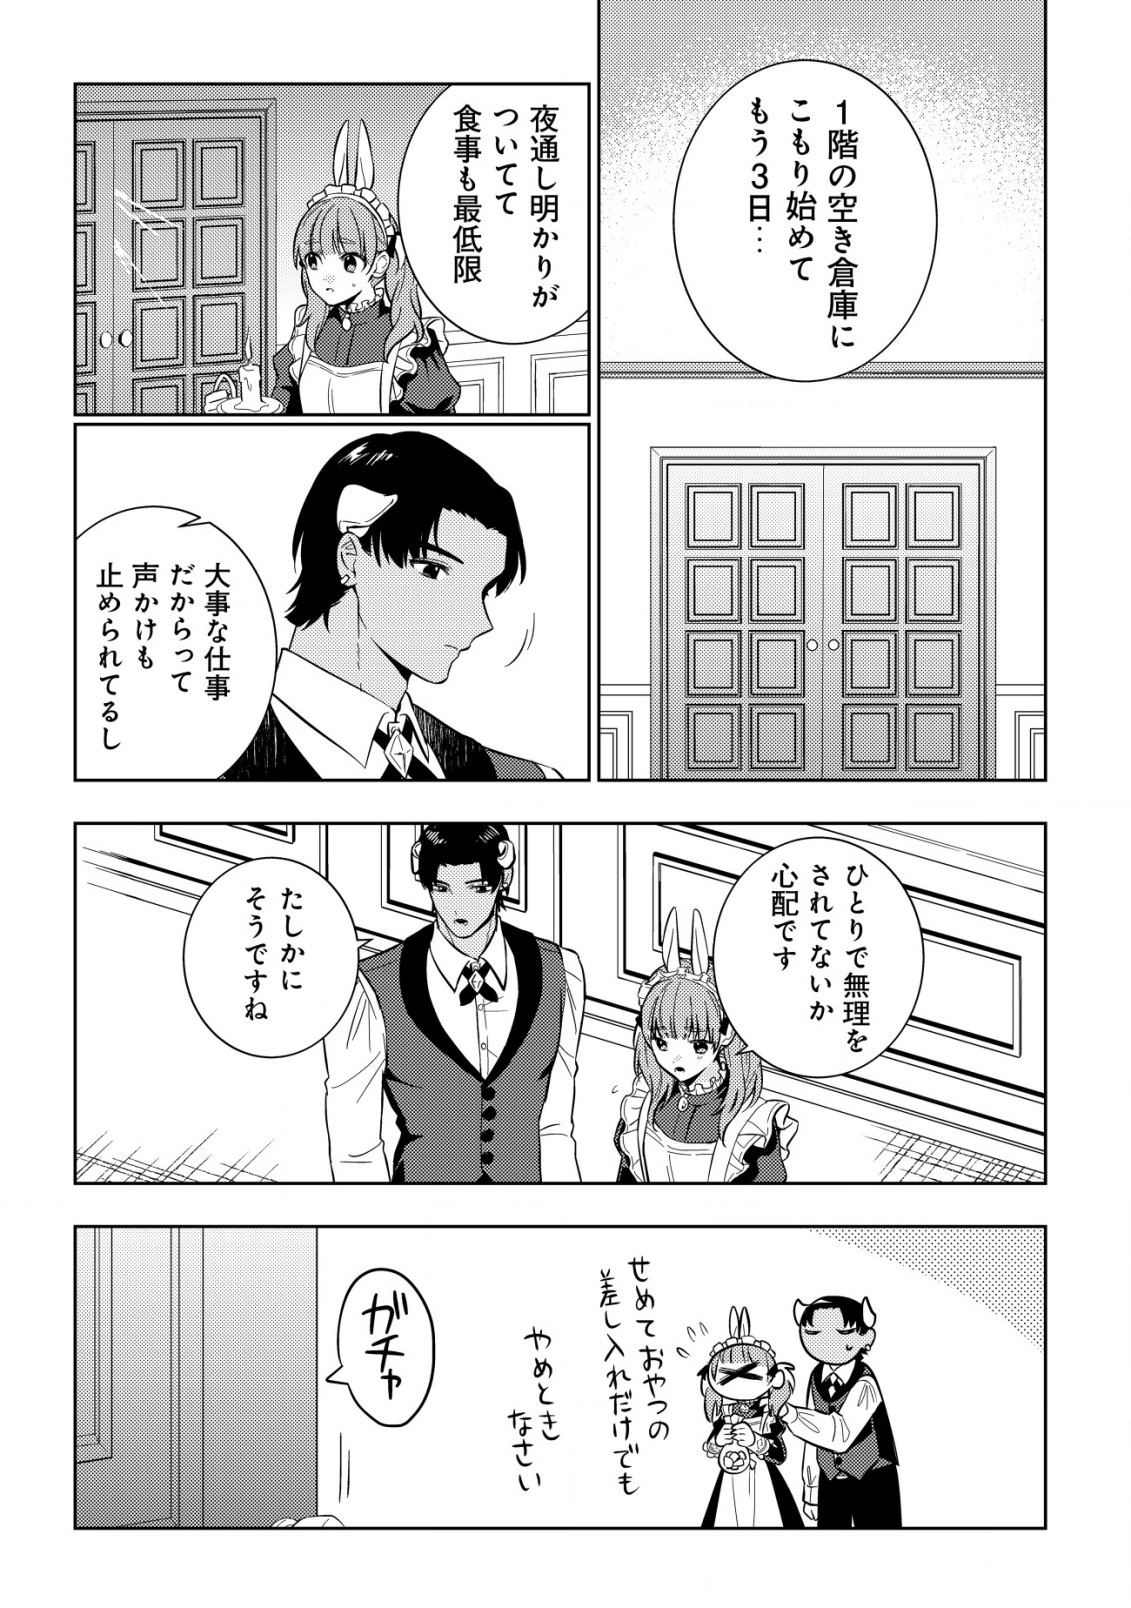 Horobi no Oukoku no Renkinjutsu Reijou - Chapter 10 - Page 3